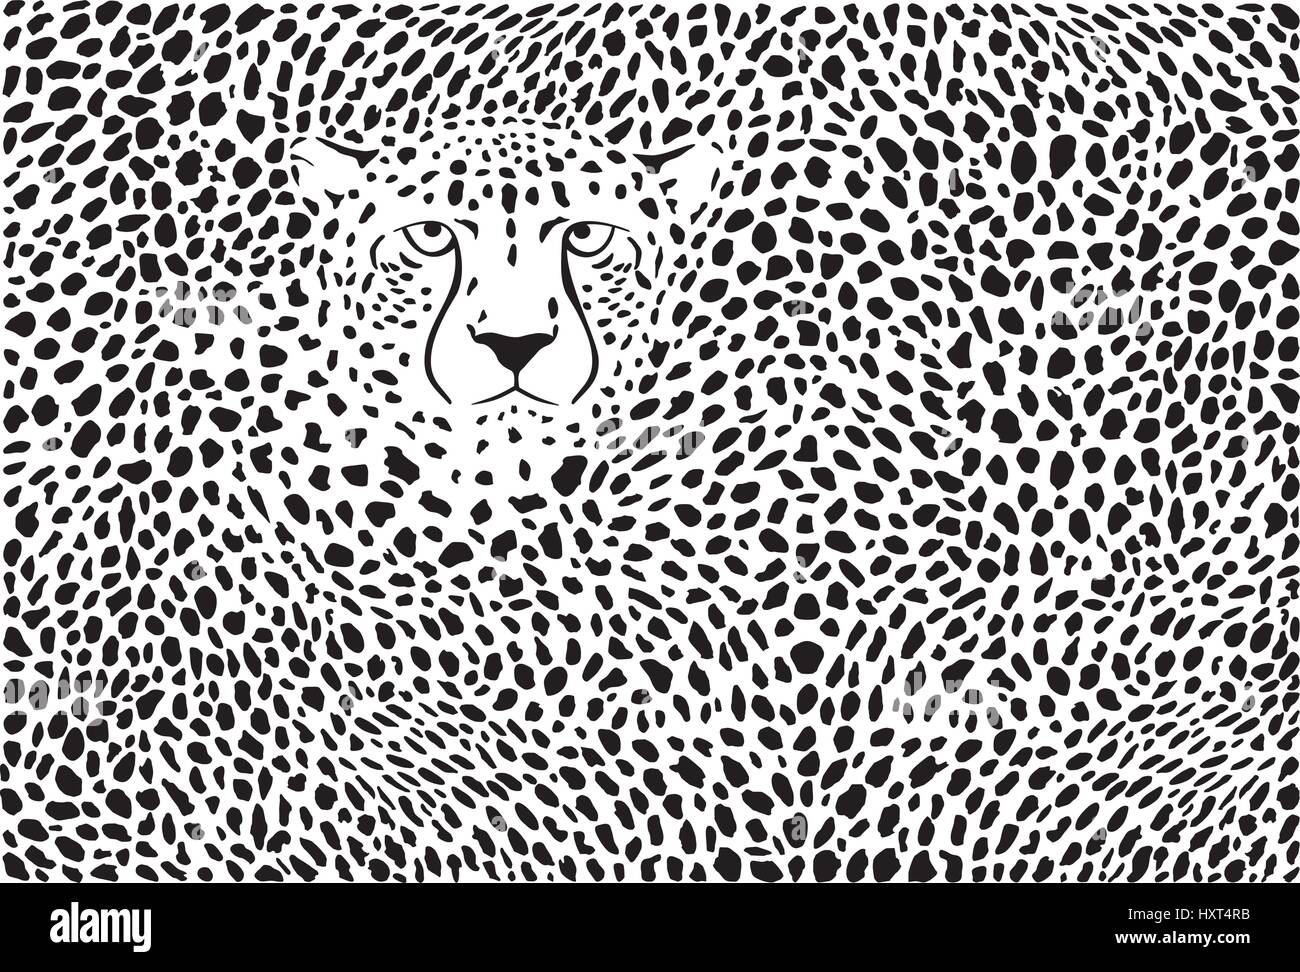 Hintergrund-Gepard-Skins und Kopf Stock Vektor